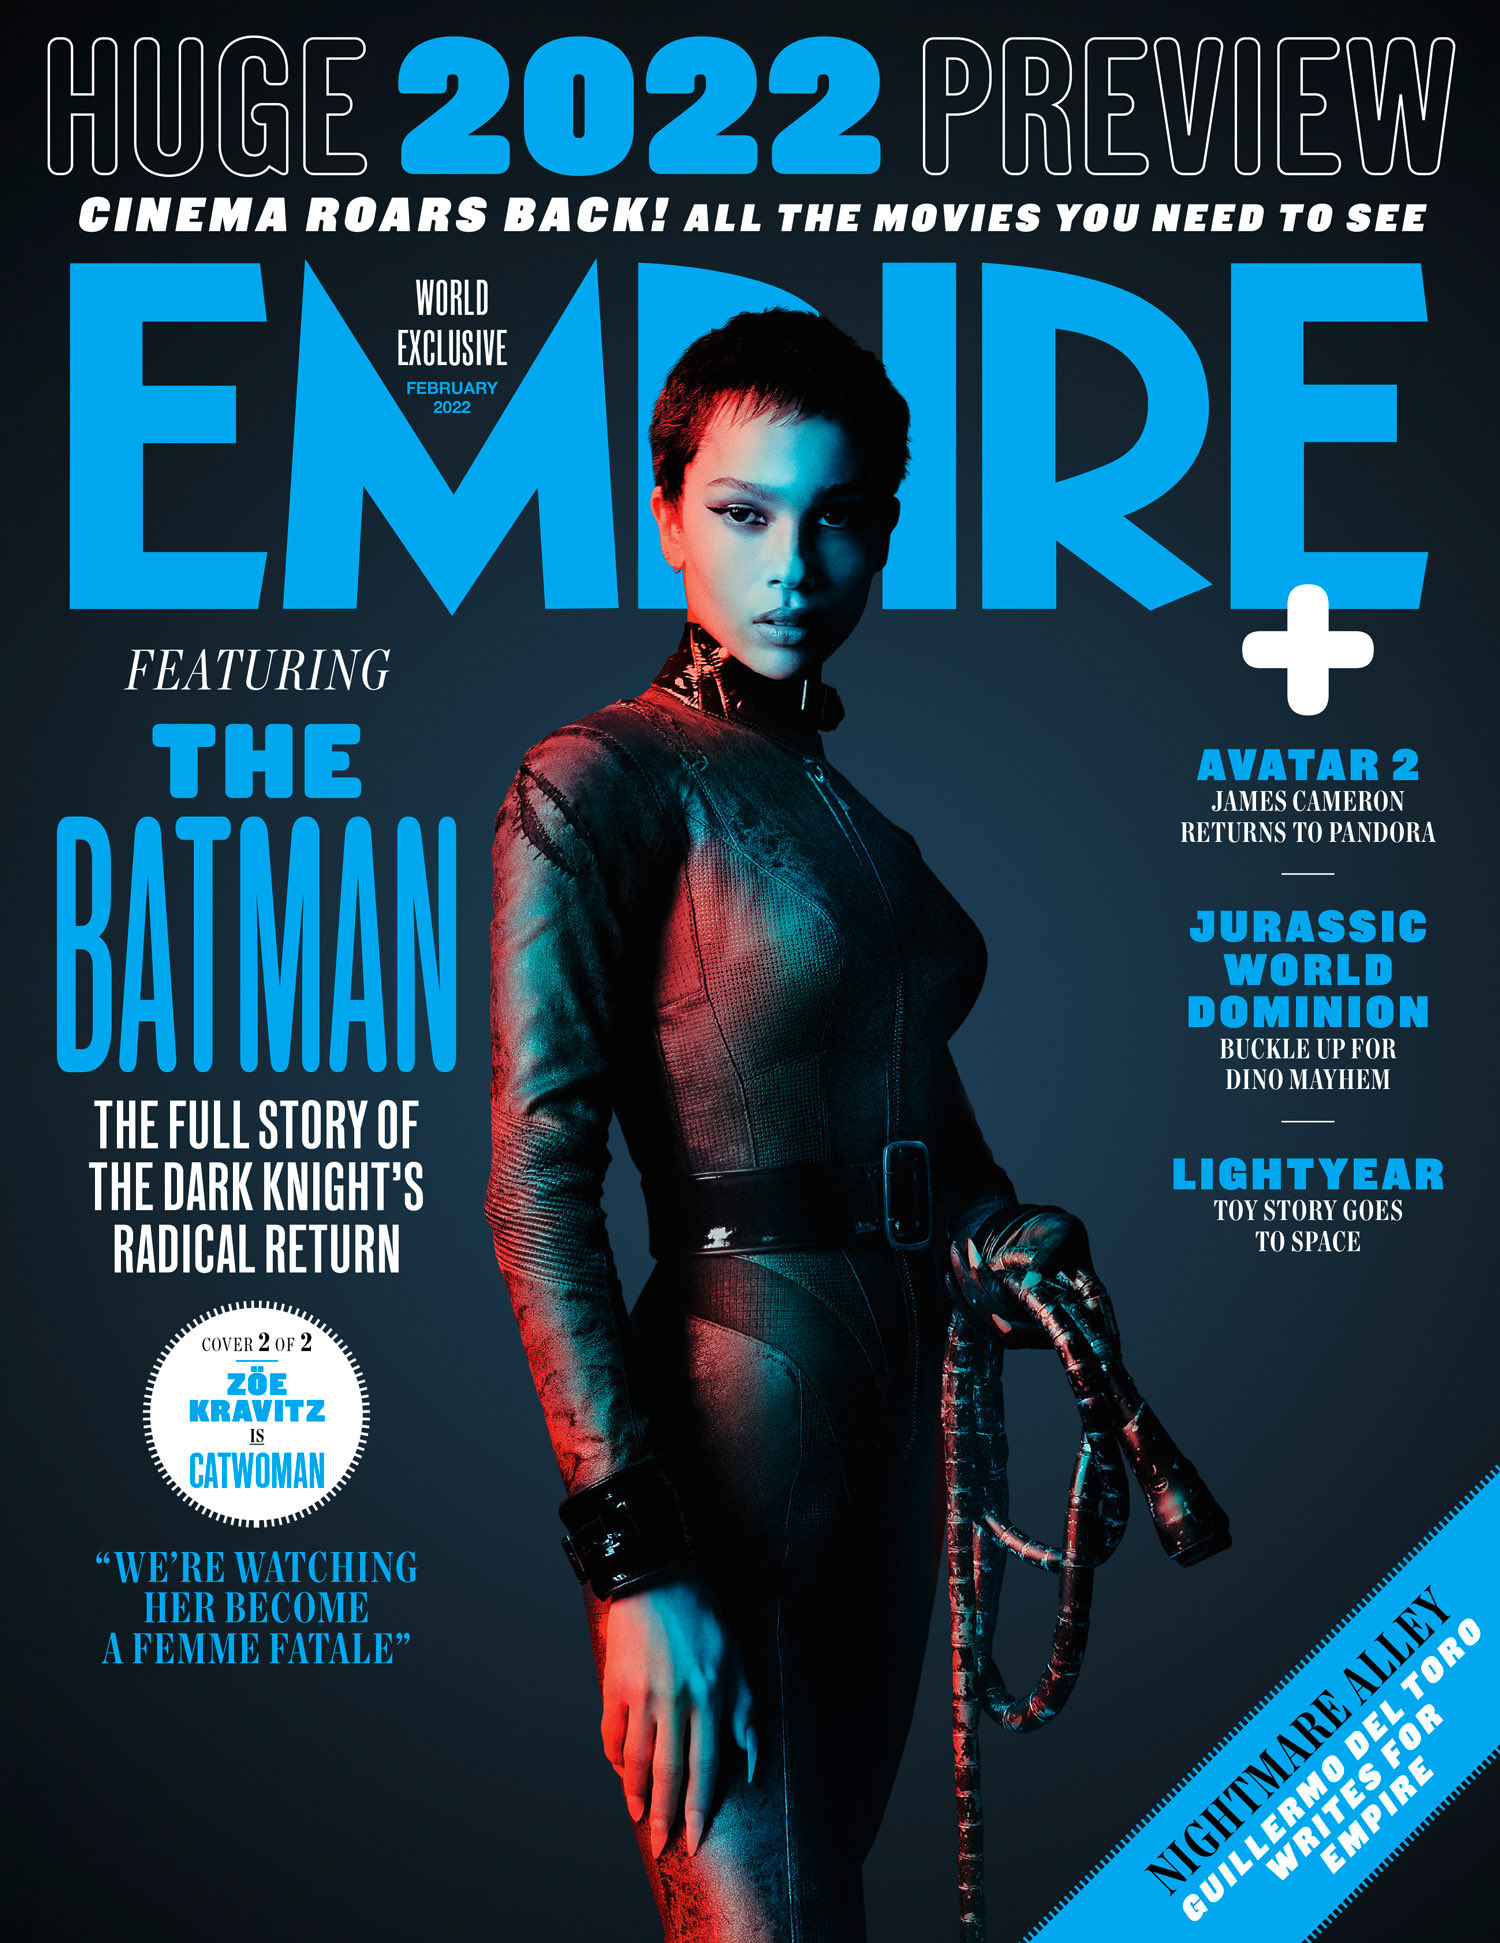 Revista divulga três fotos do filme Batman, com Robert Pattinson e Zoë Kravitz